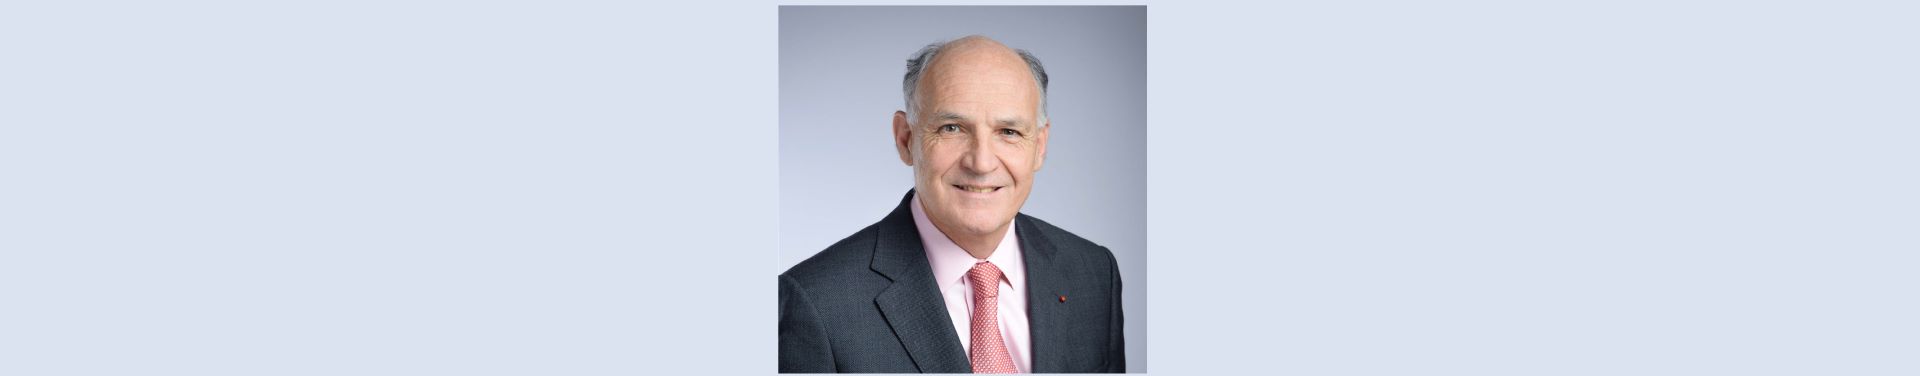 Pierre-André de Chalendar succède à Antoine Frérot comme Président de l’Institut de l’Entreprise